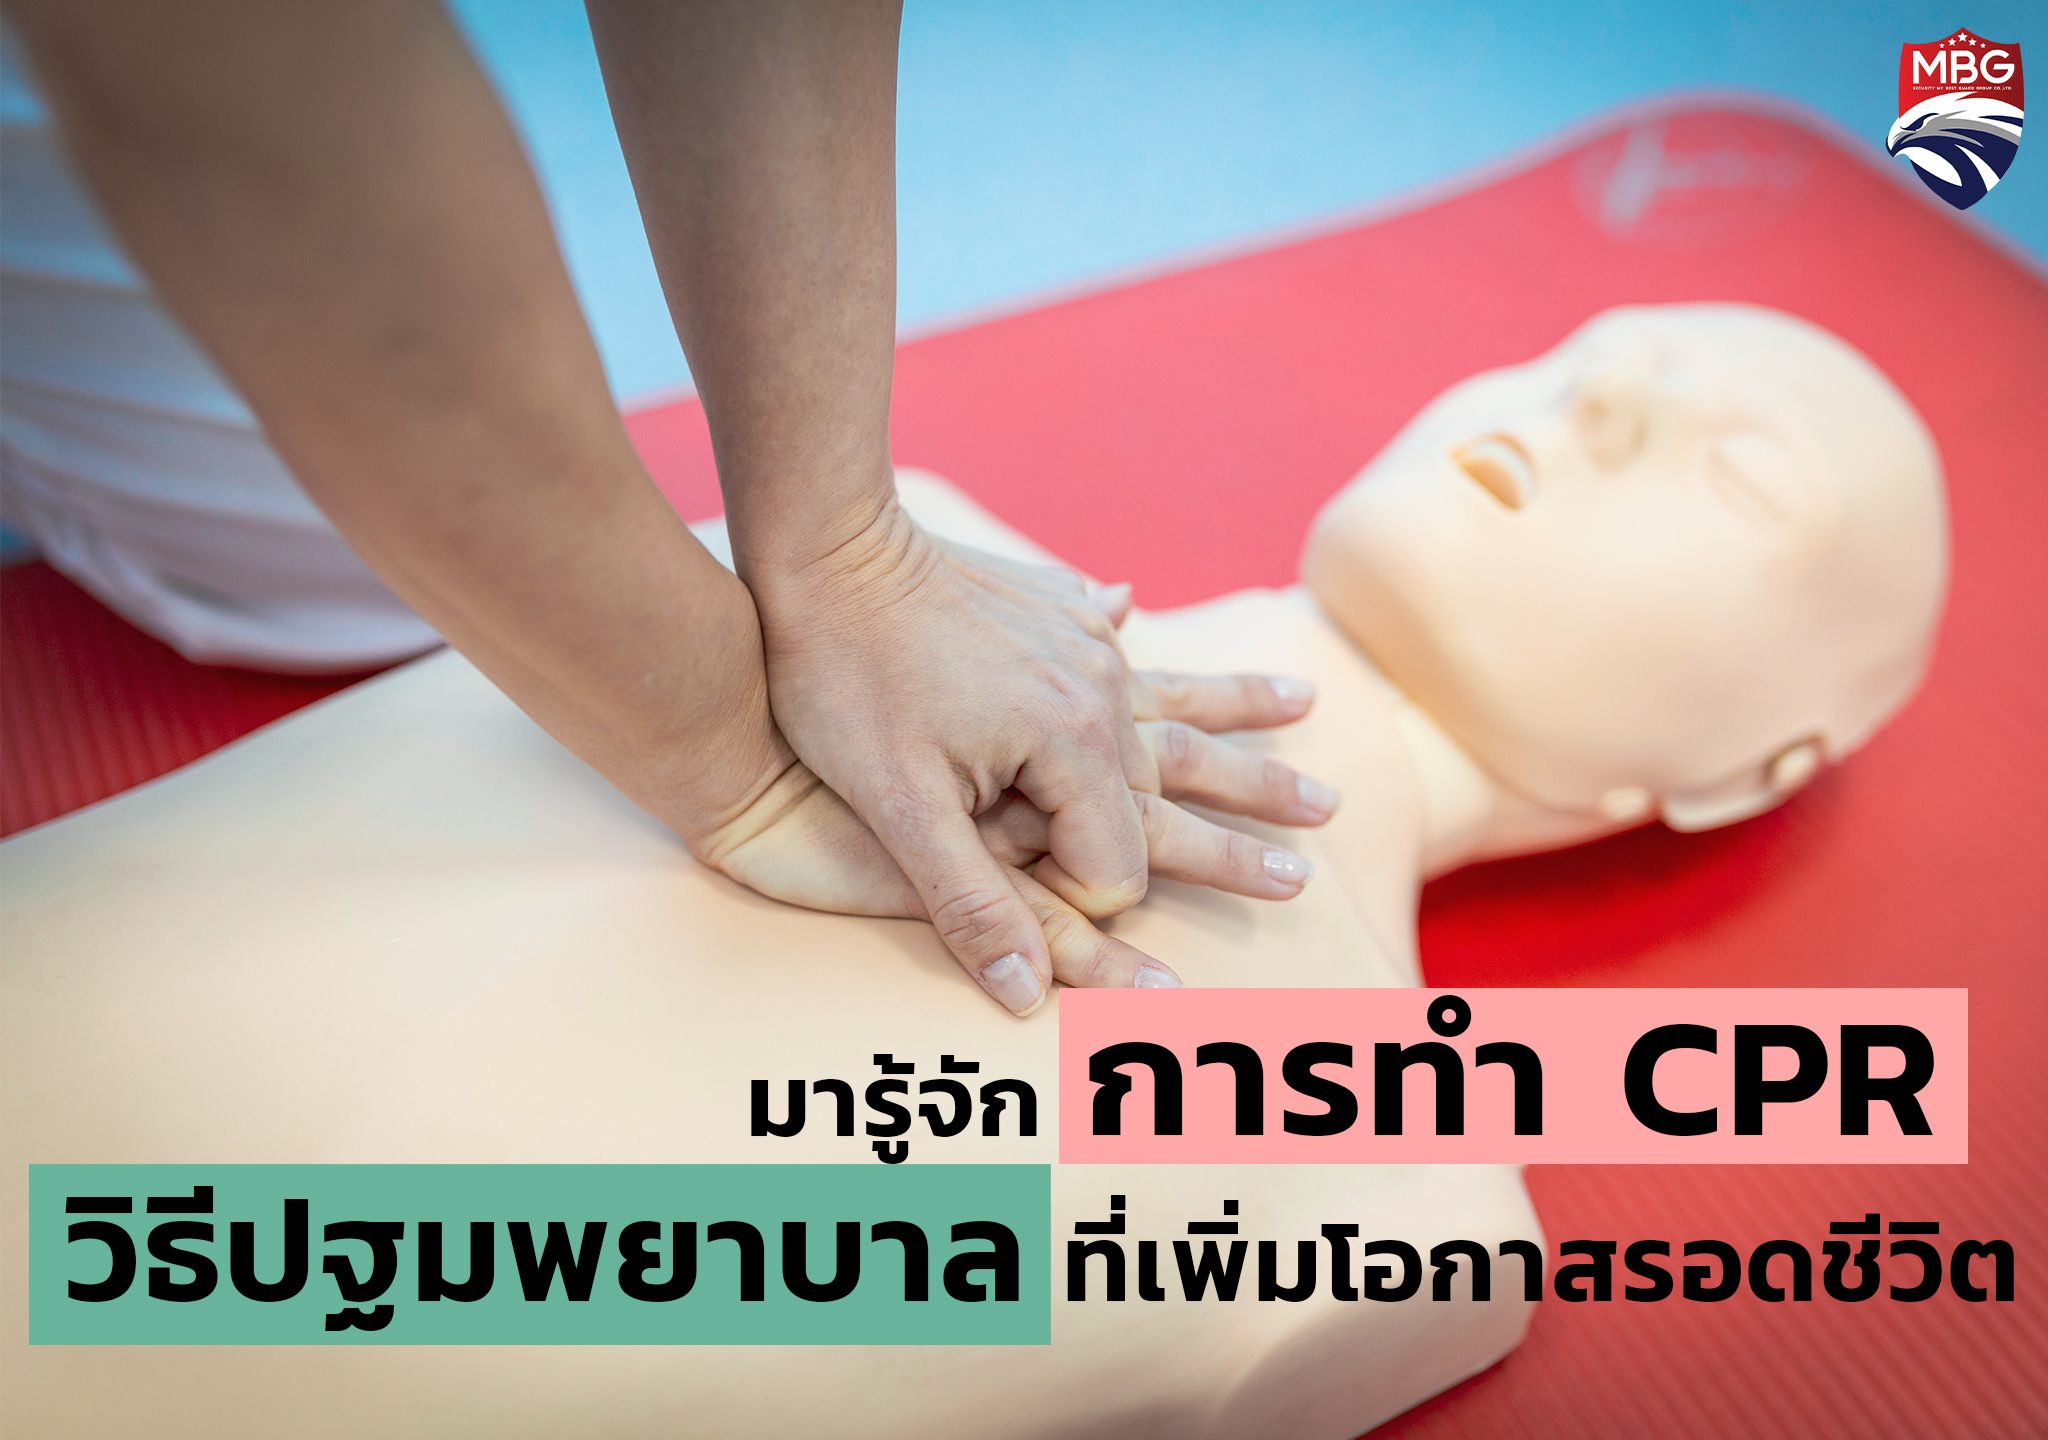 มารู้จัก การทำ CPR วิธีปฐมพยาบาลที่เพิ่มโอกาสรอดชีวิต